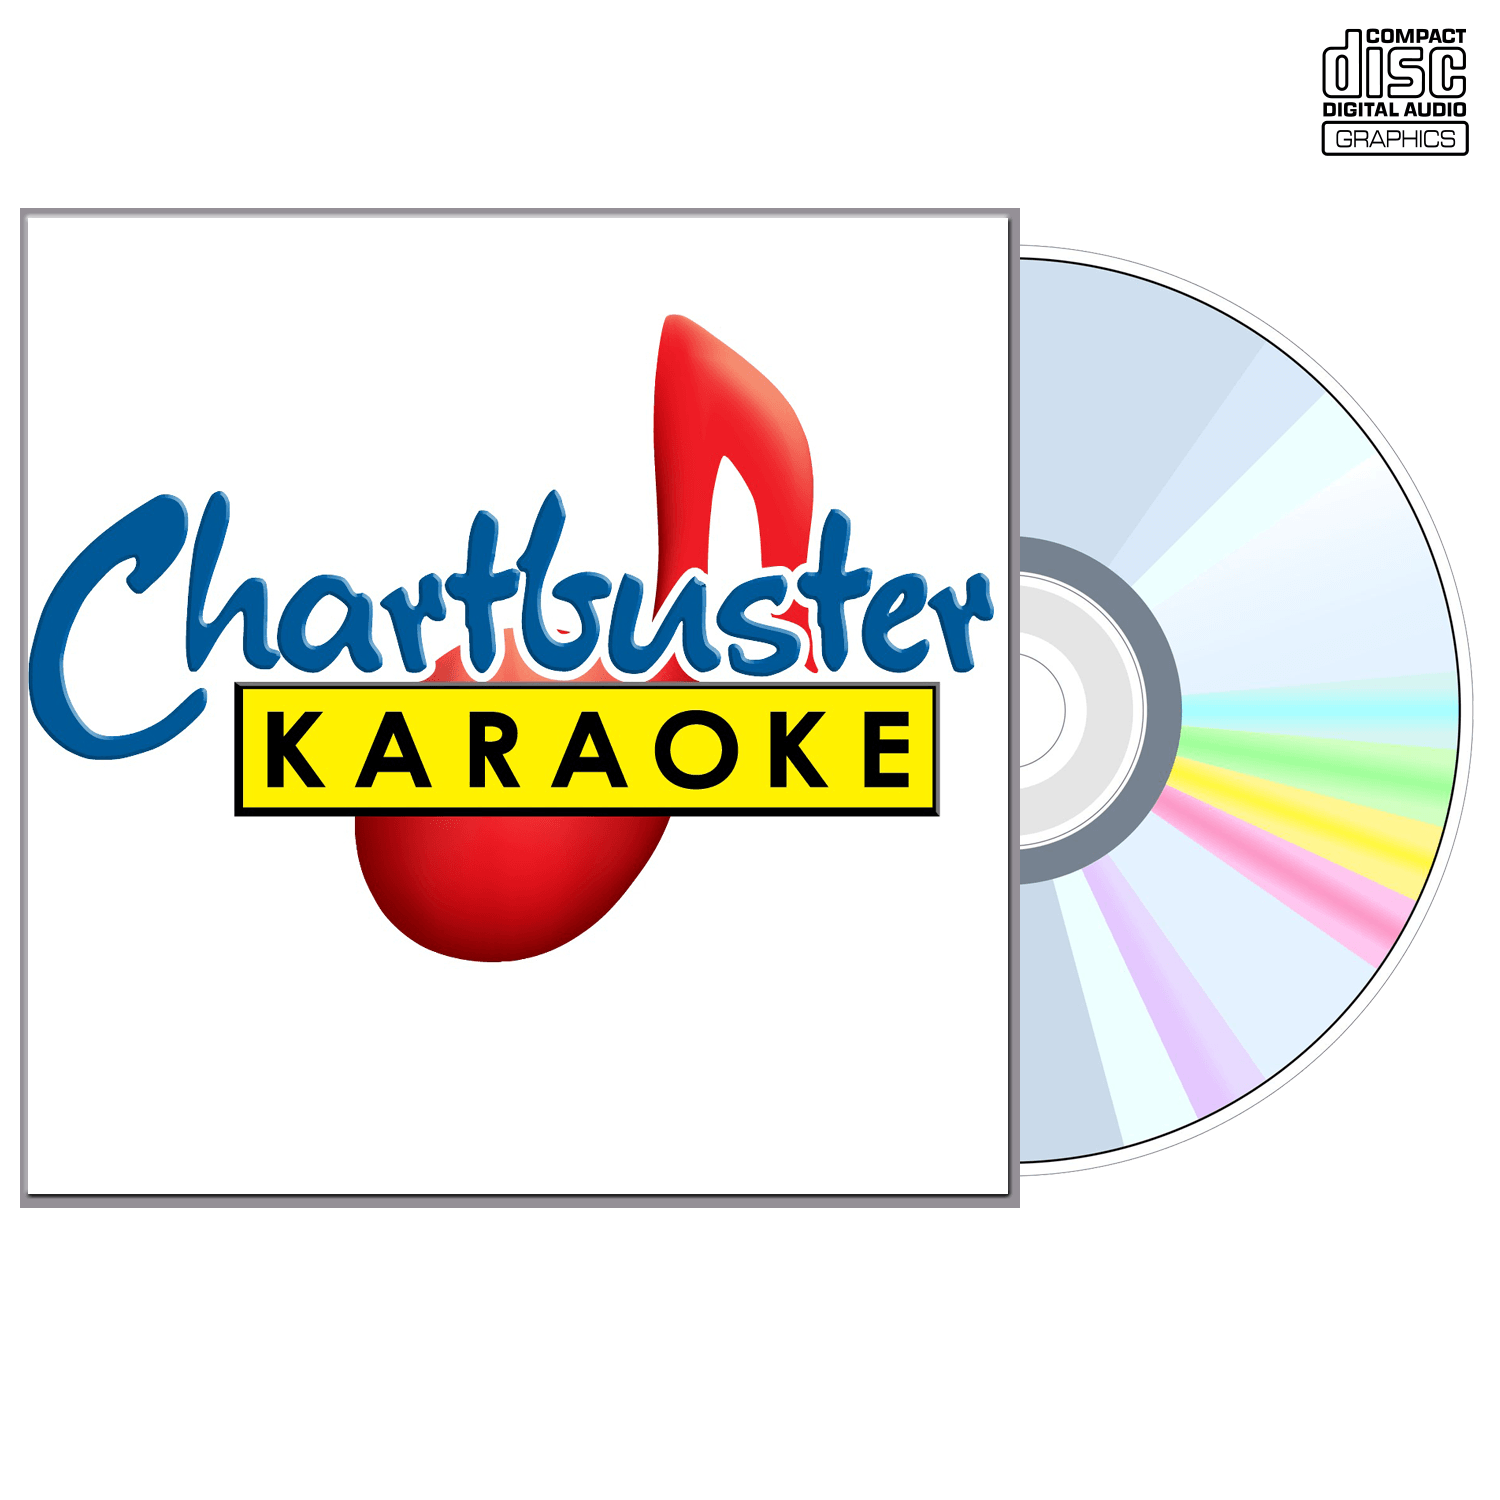 Amerie - CD+G - Chartbuster Karaoke - Karaoke Home Entertainment